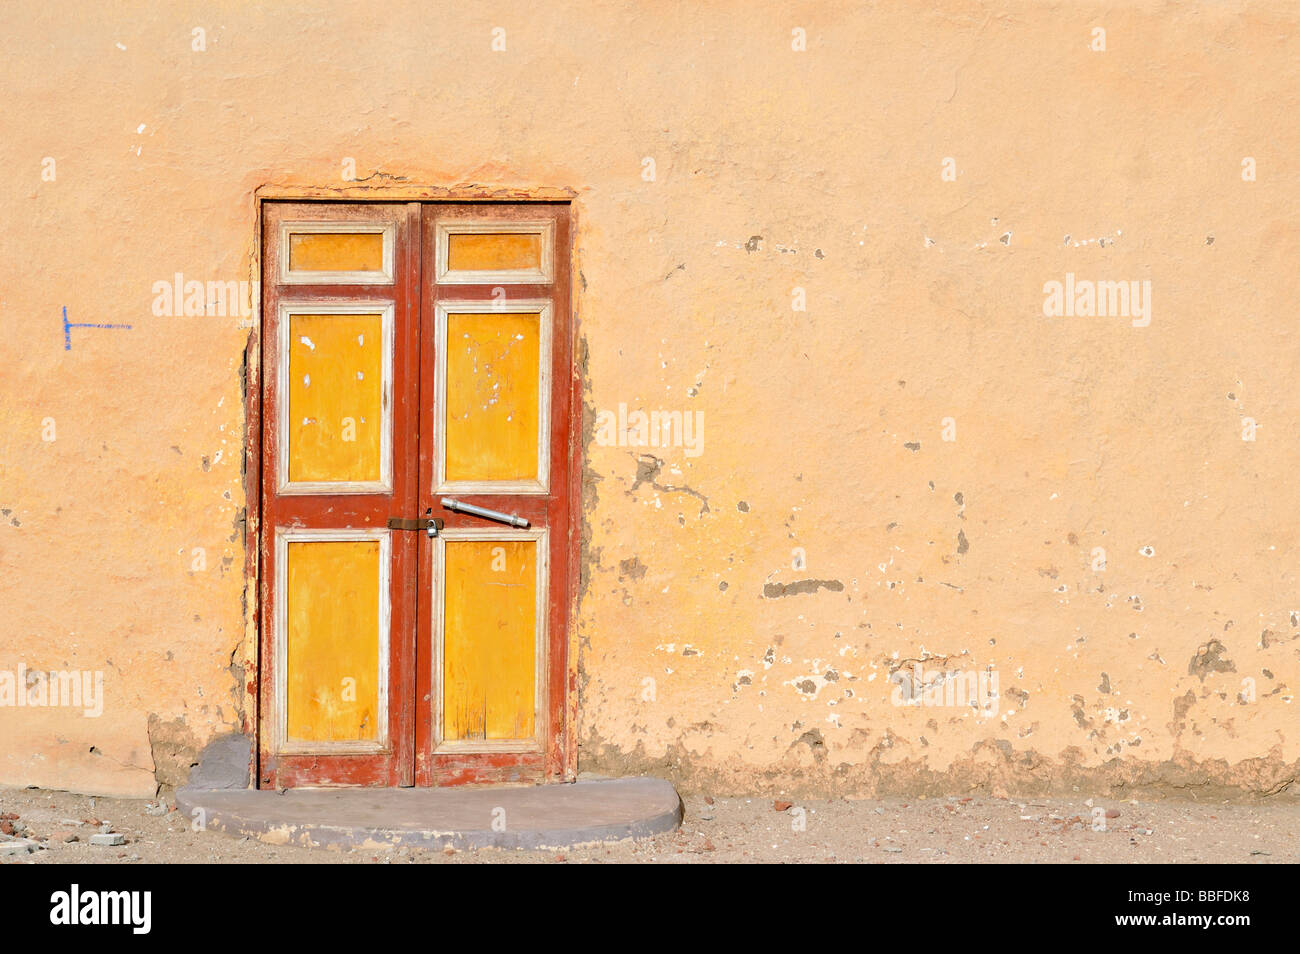 De portes et de façades peintes de couleurs vives de la mosquée du village campagne égyptienne près de Luxor Banque D'Images